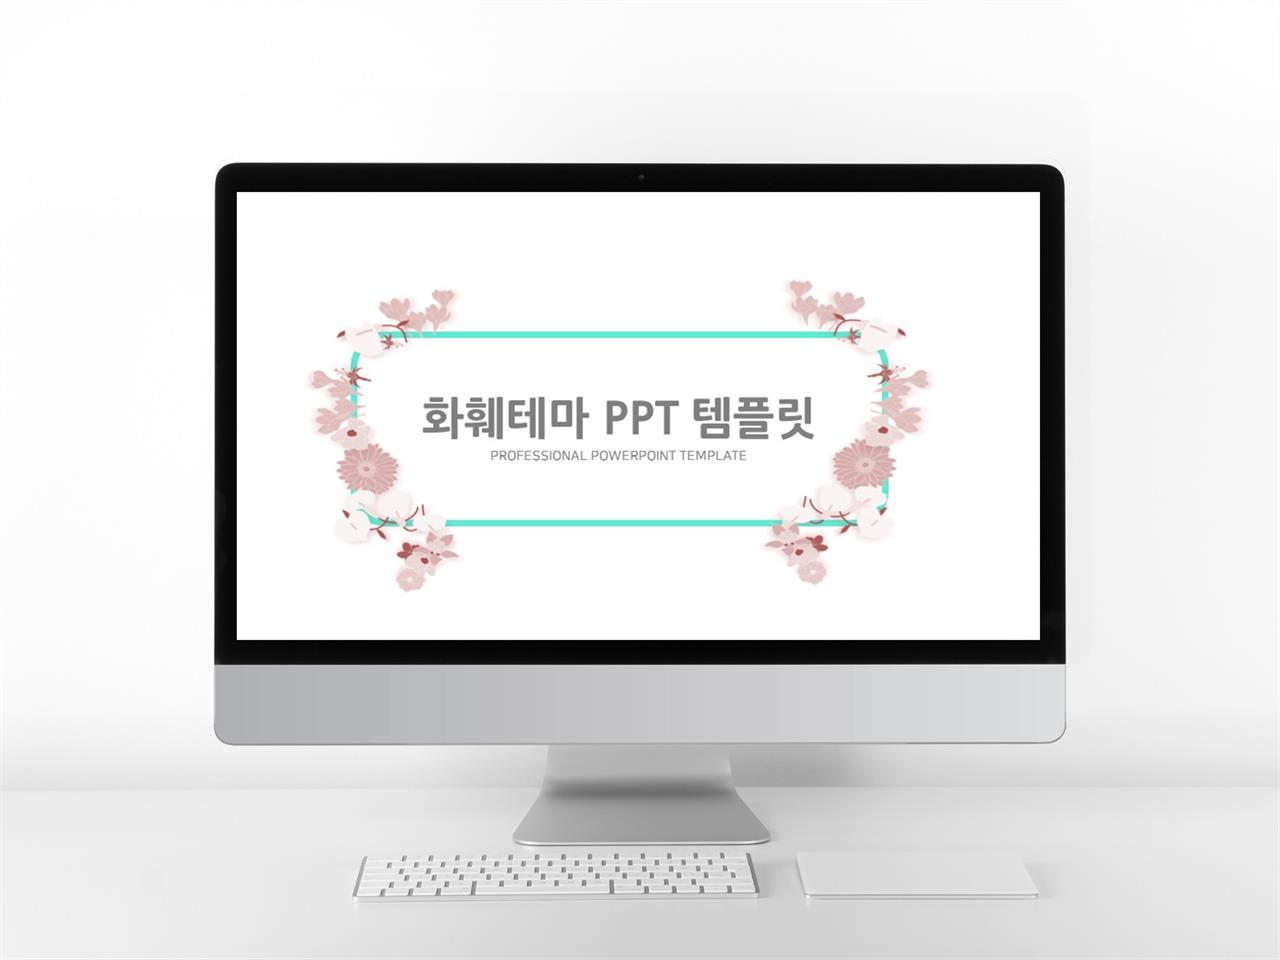 꽃과 동식물 주제 핑크색 단출한 고급스럽운 PPT서식 사이트 미리보기